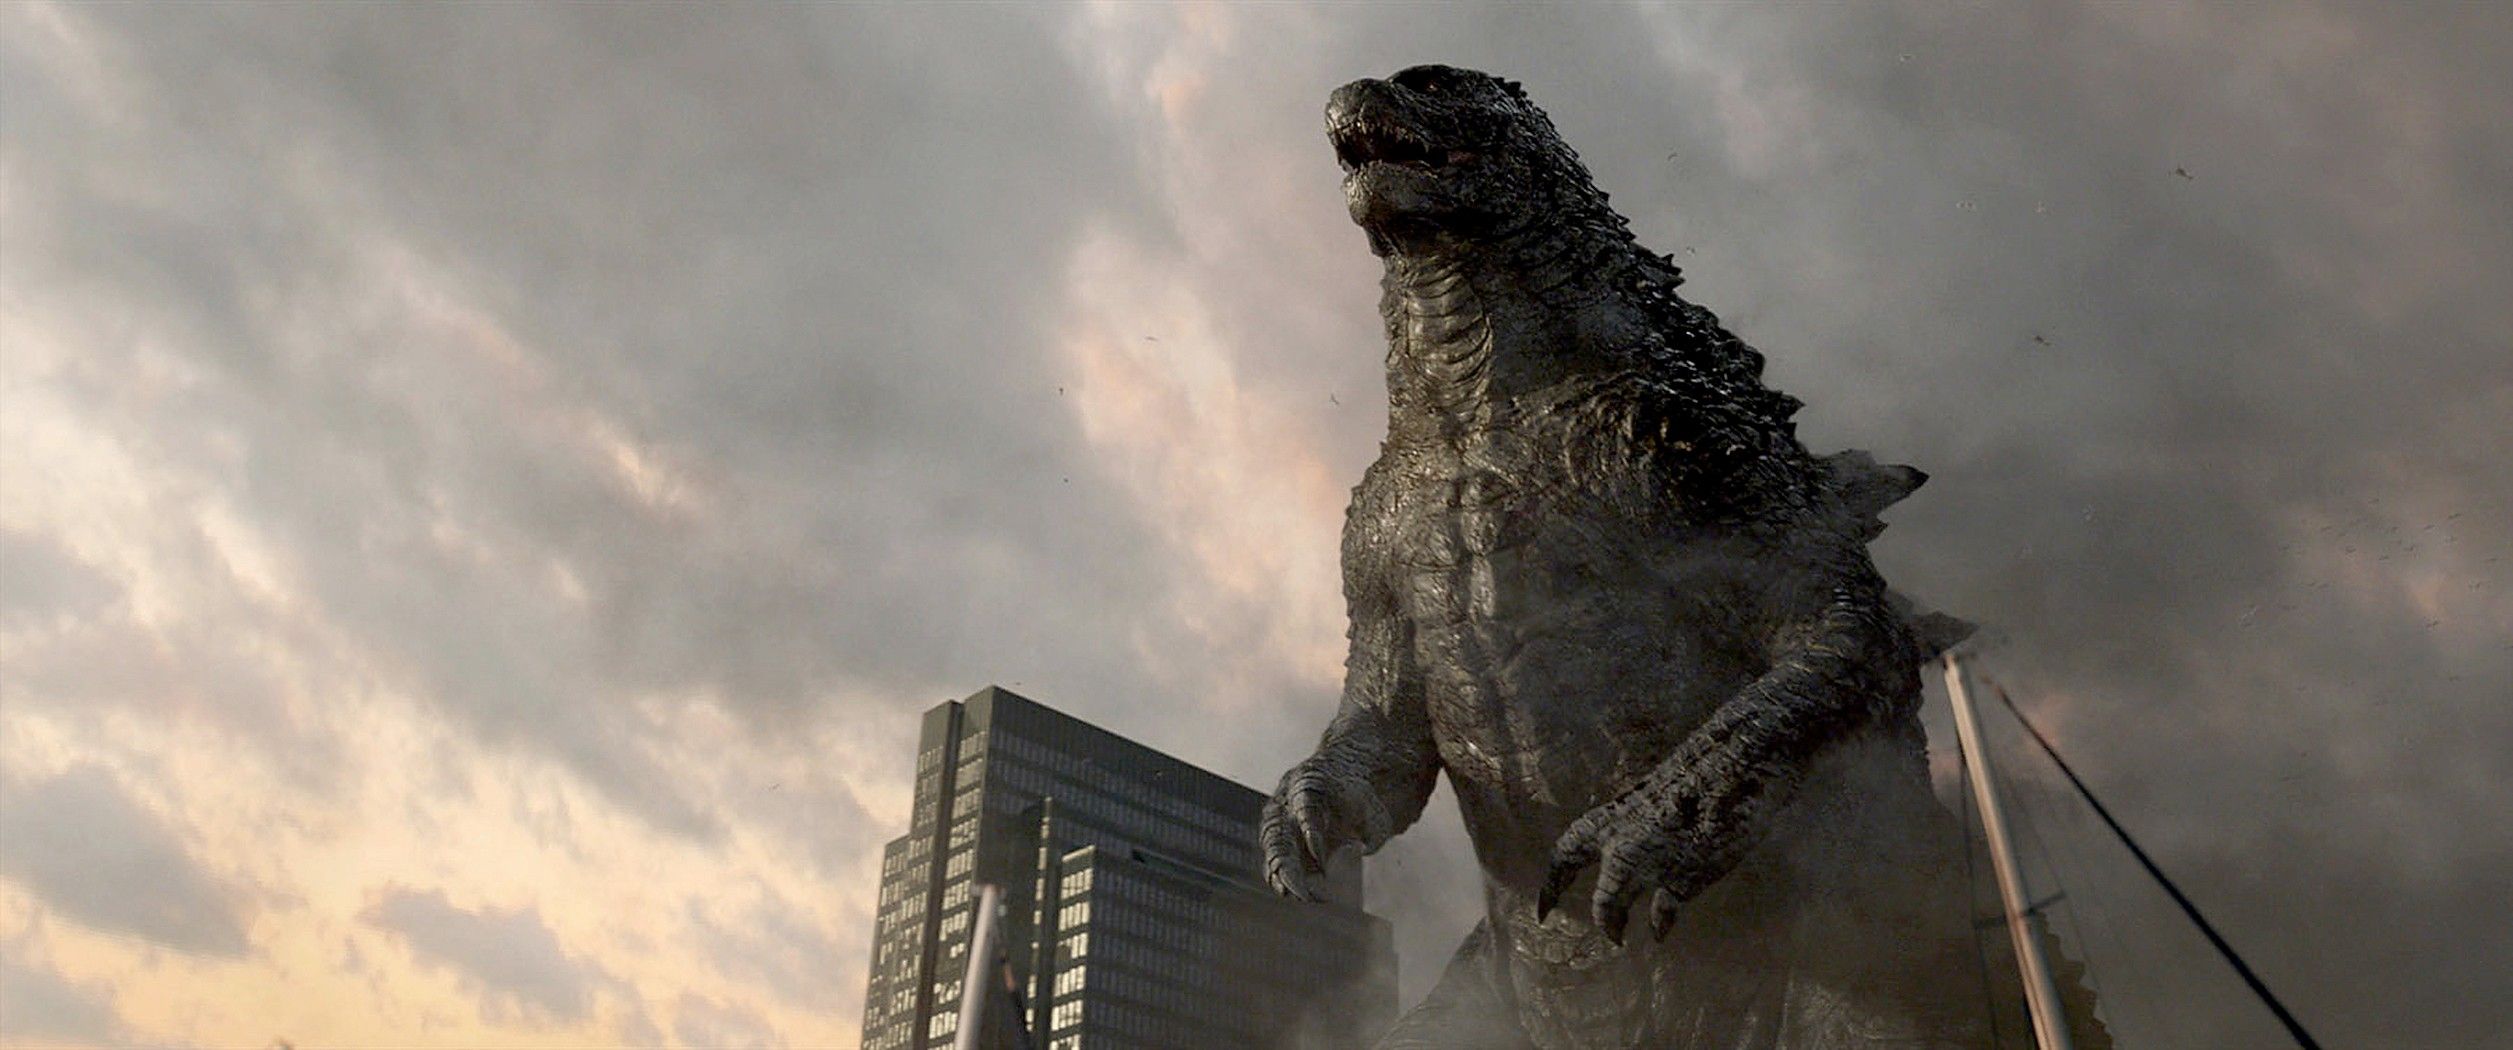 All Godzilla Films Ranked